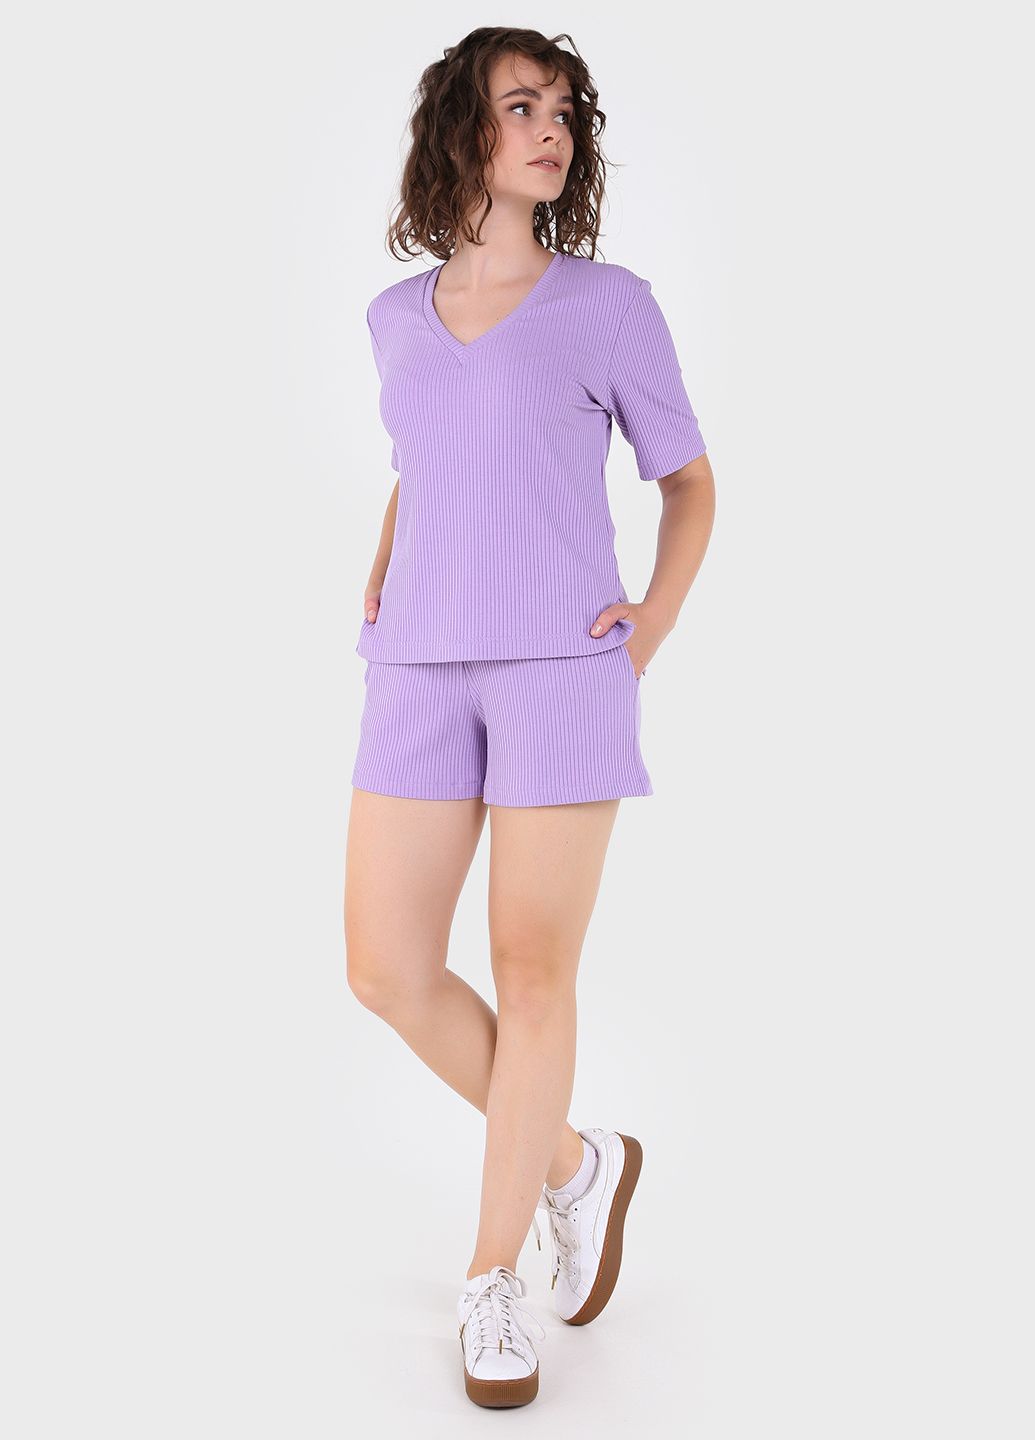 Купить Легкая футболка женская в рубчик Merlini Корунья 800000027 - Сиреневый, 42-44 в интернет-магазине